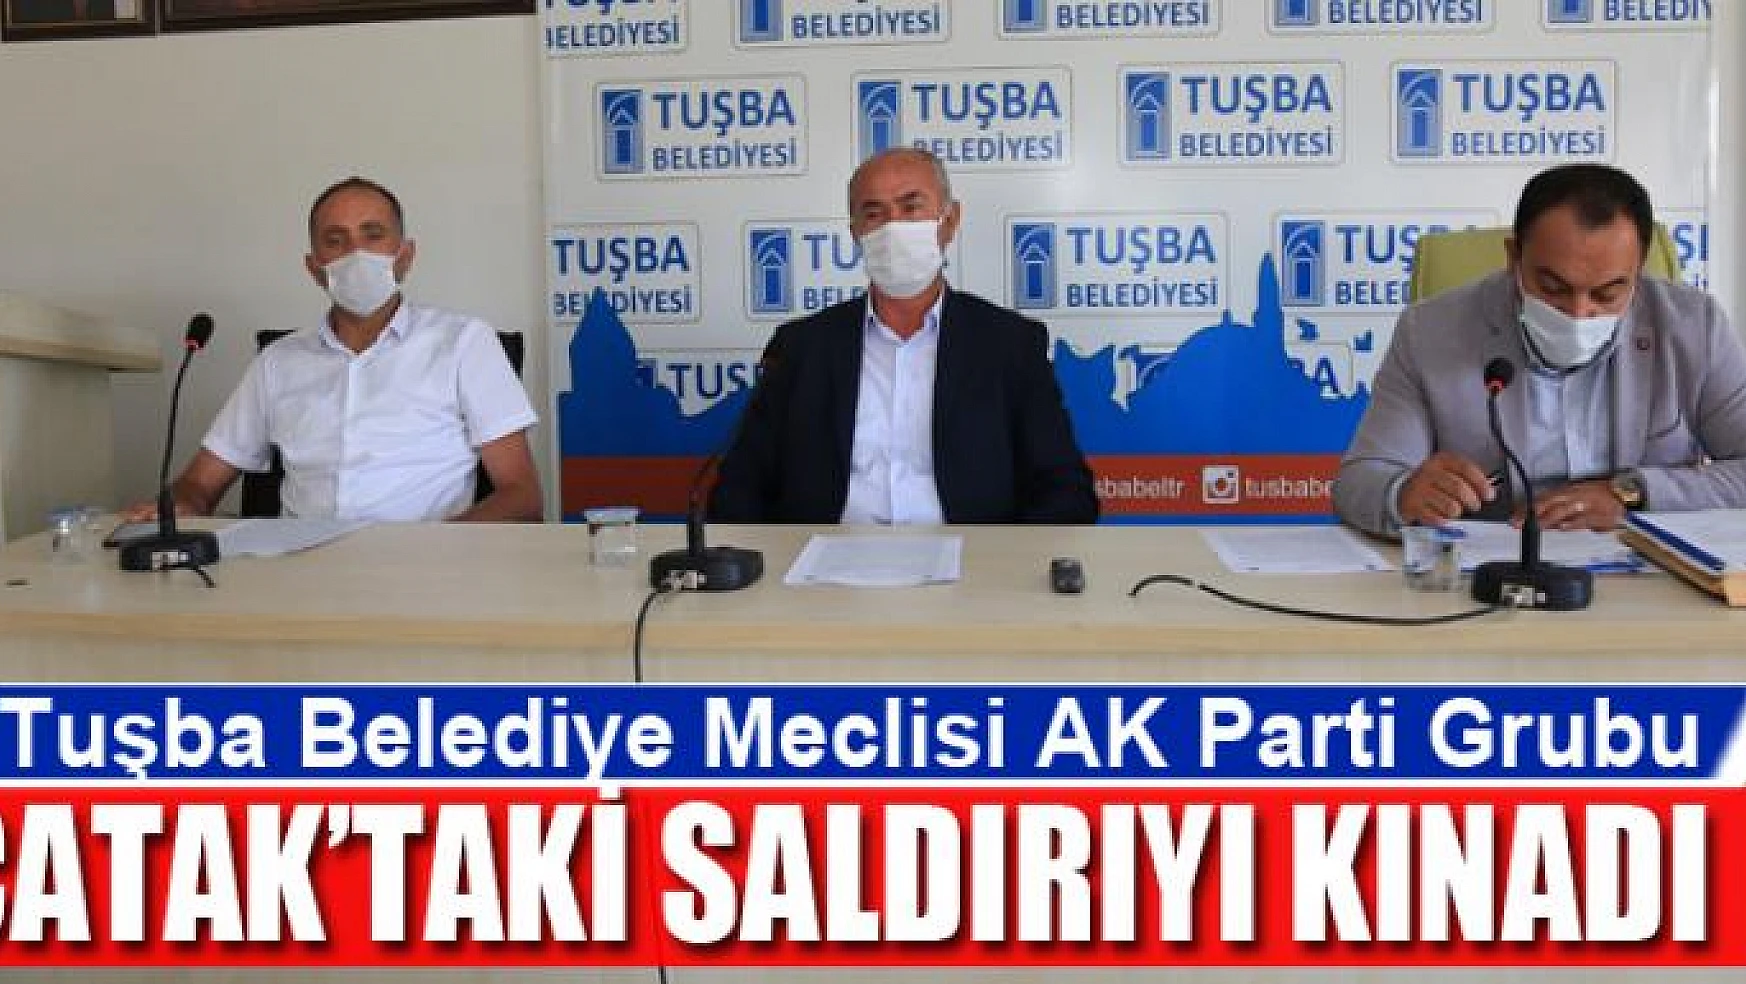 Tuşba Belediye Meclisi AK Parti Grubu Çatak'taki saldırıyı kınadı